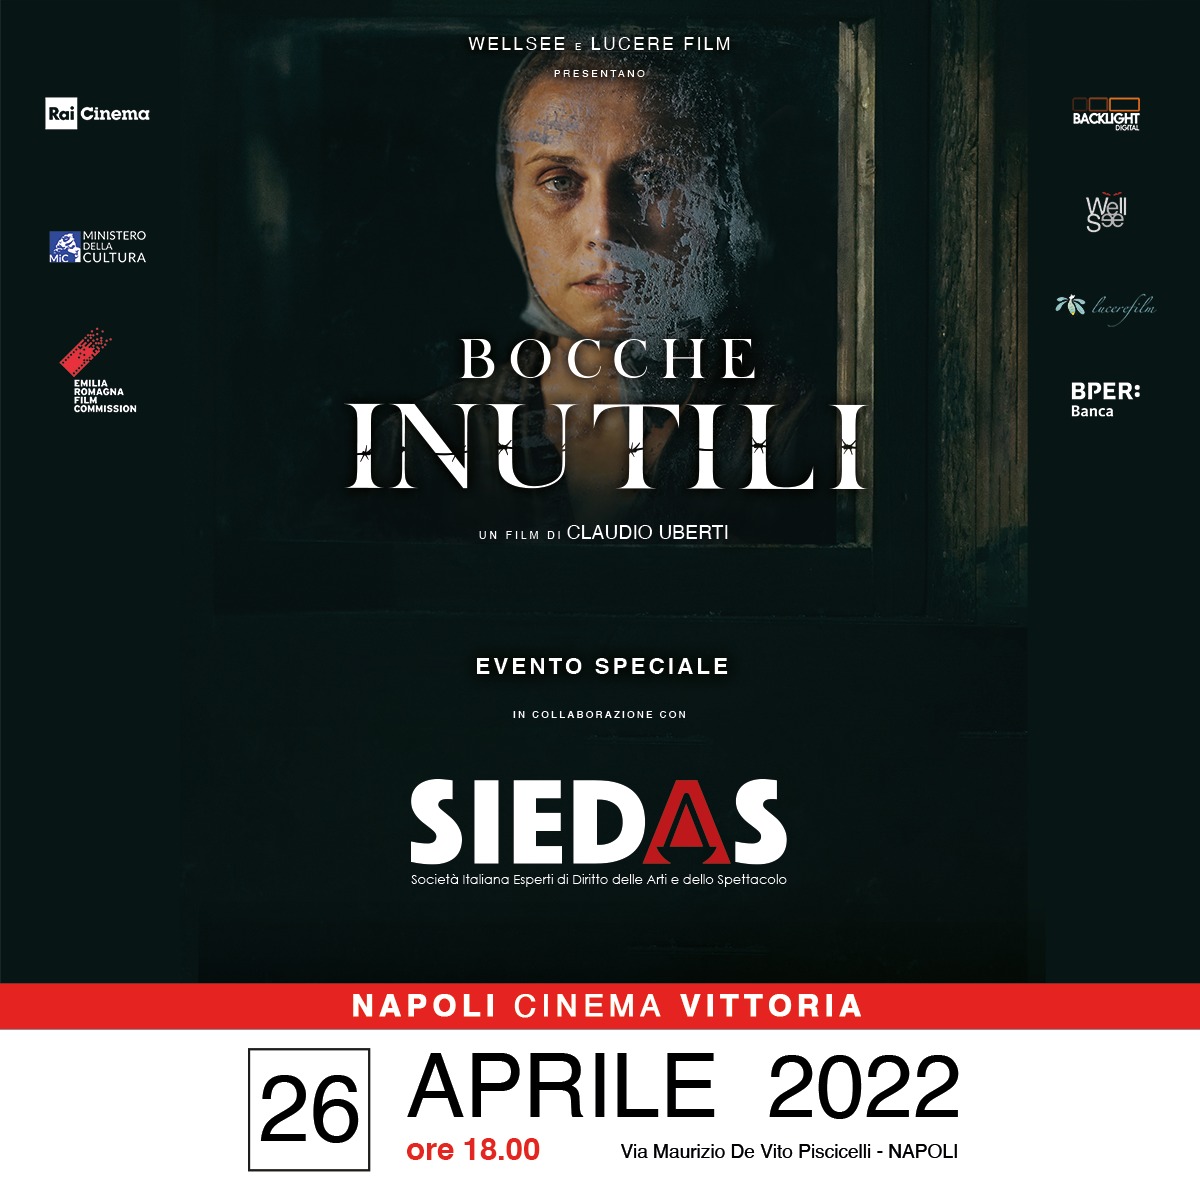 Dal 25 al 29 aprile il film-evento “Bocche inutili” di Claudio Uberti